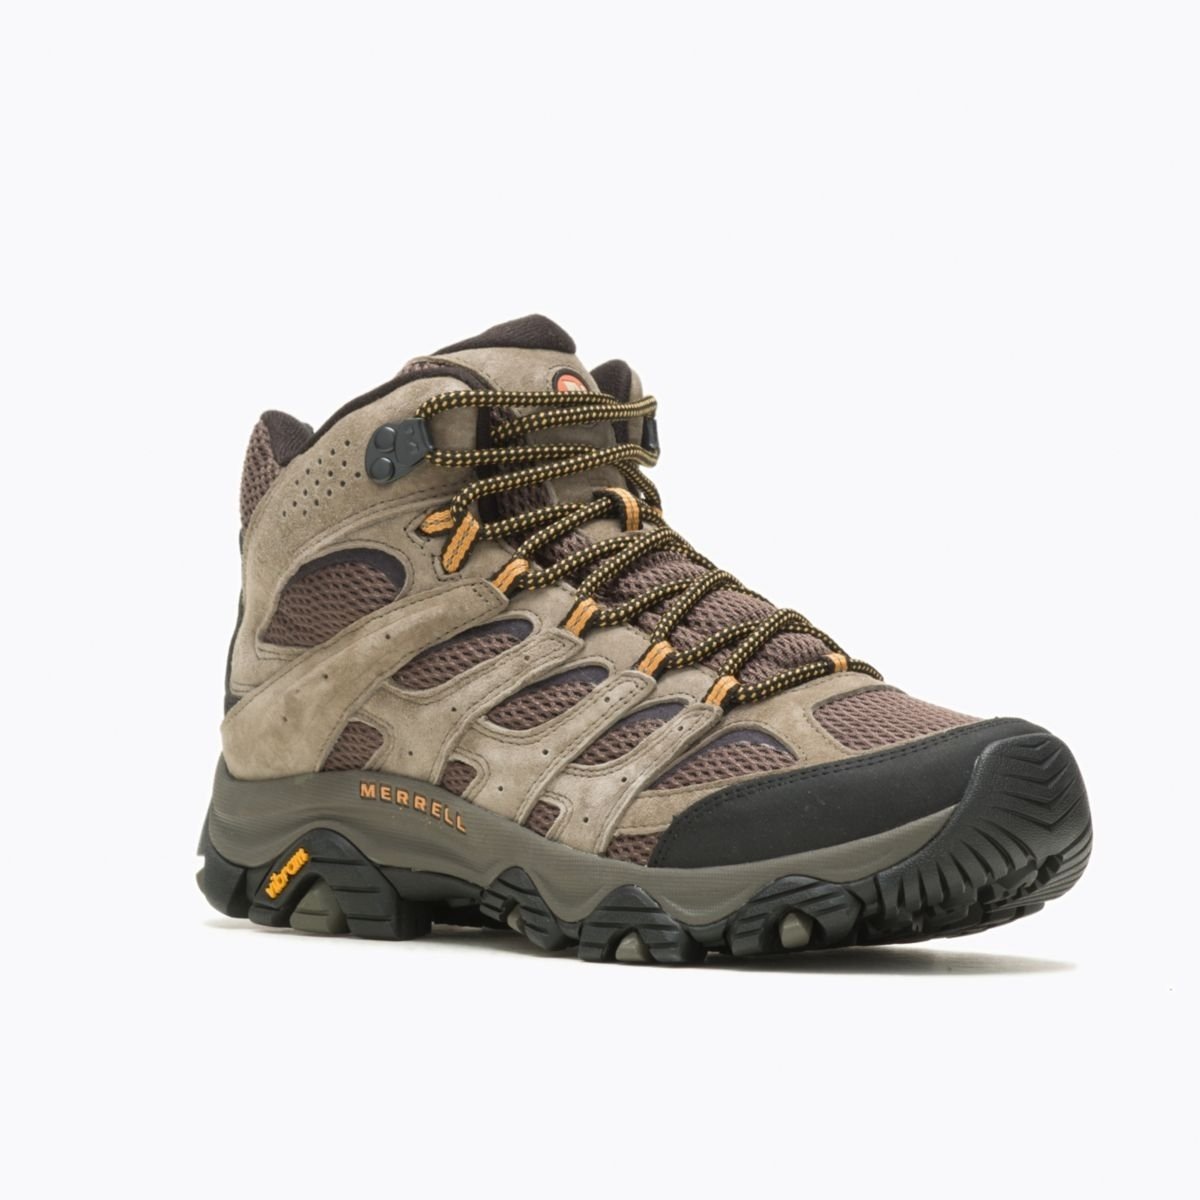 Merrell Men's Moab 3 Mid GORE-TEX Hiking Boot Walnut - J035795 WALNUT - WALNUT, 10.5